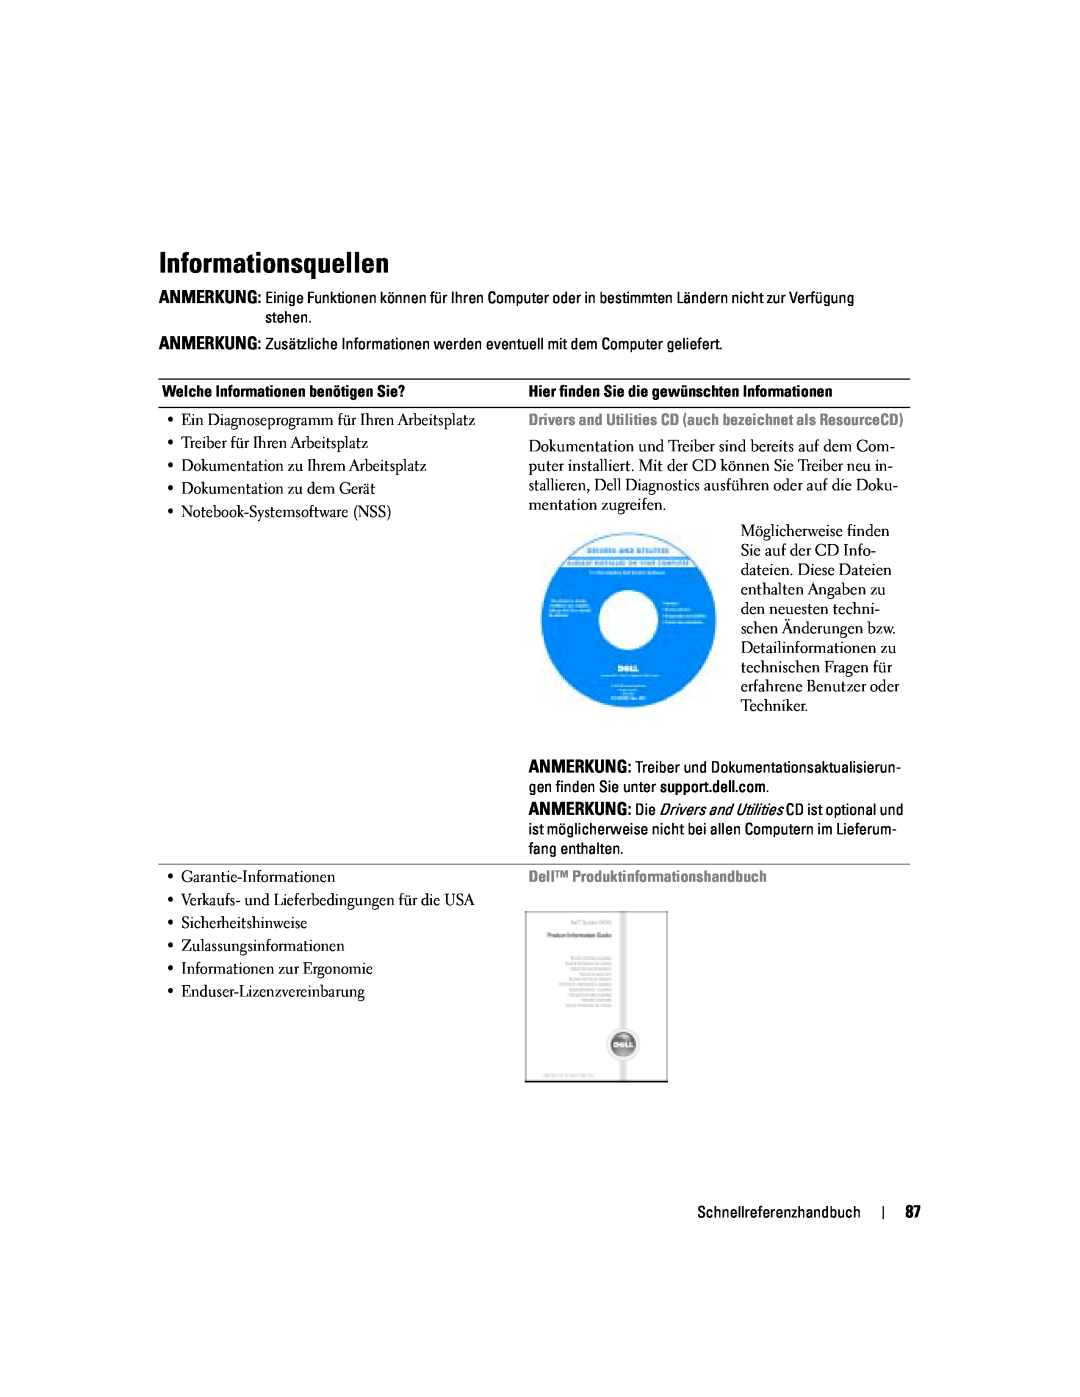 Dell PP06S manual Informationsquellen, Dell Produktinformationshandbuch 